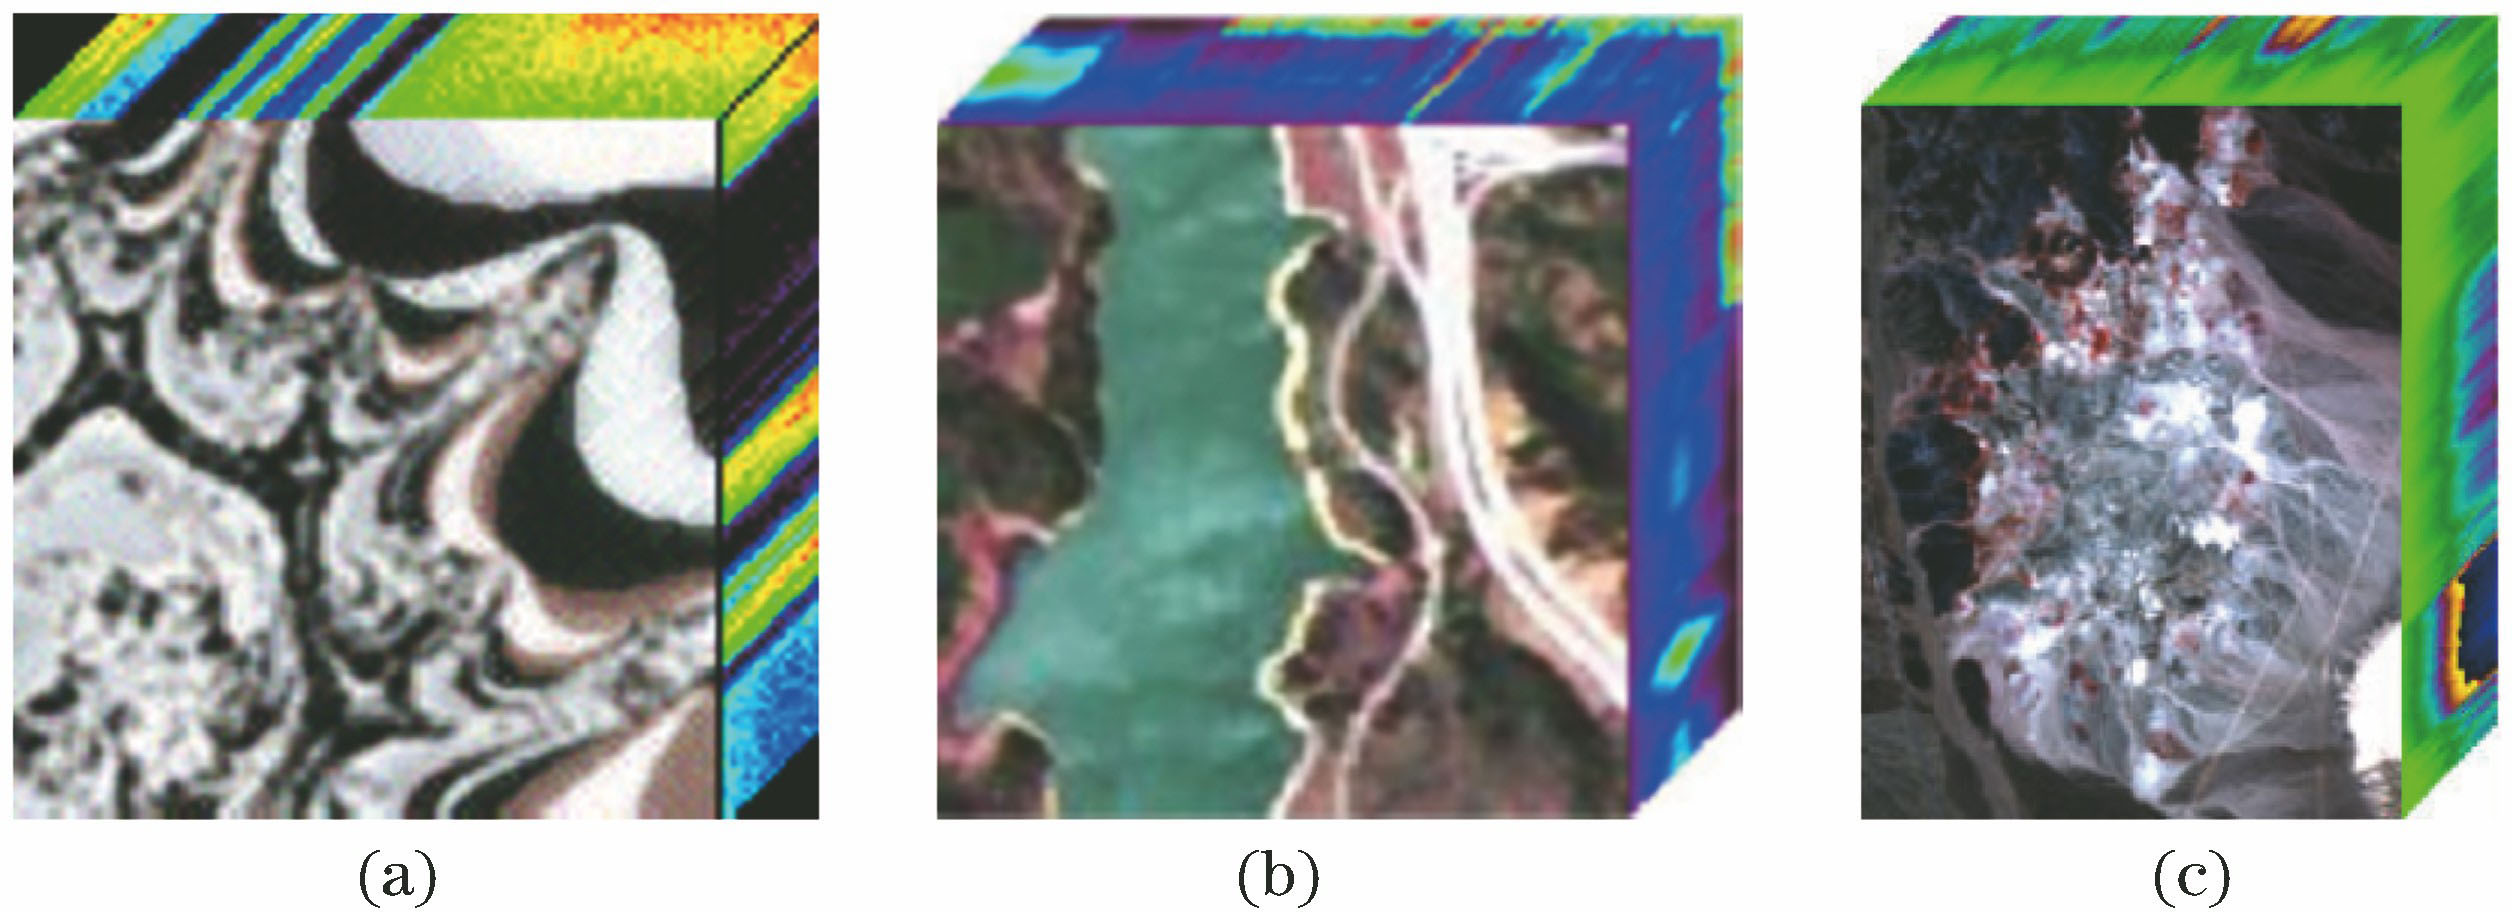 Hyperspectral images. (a) Fractal1; (b) Jasper; (c) Cuprite